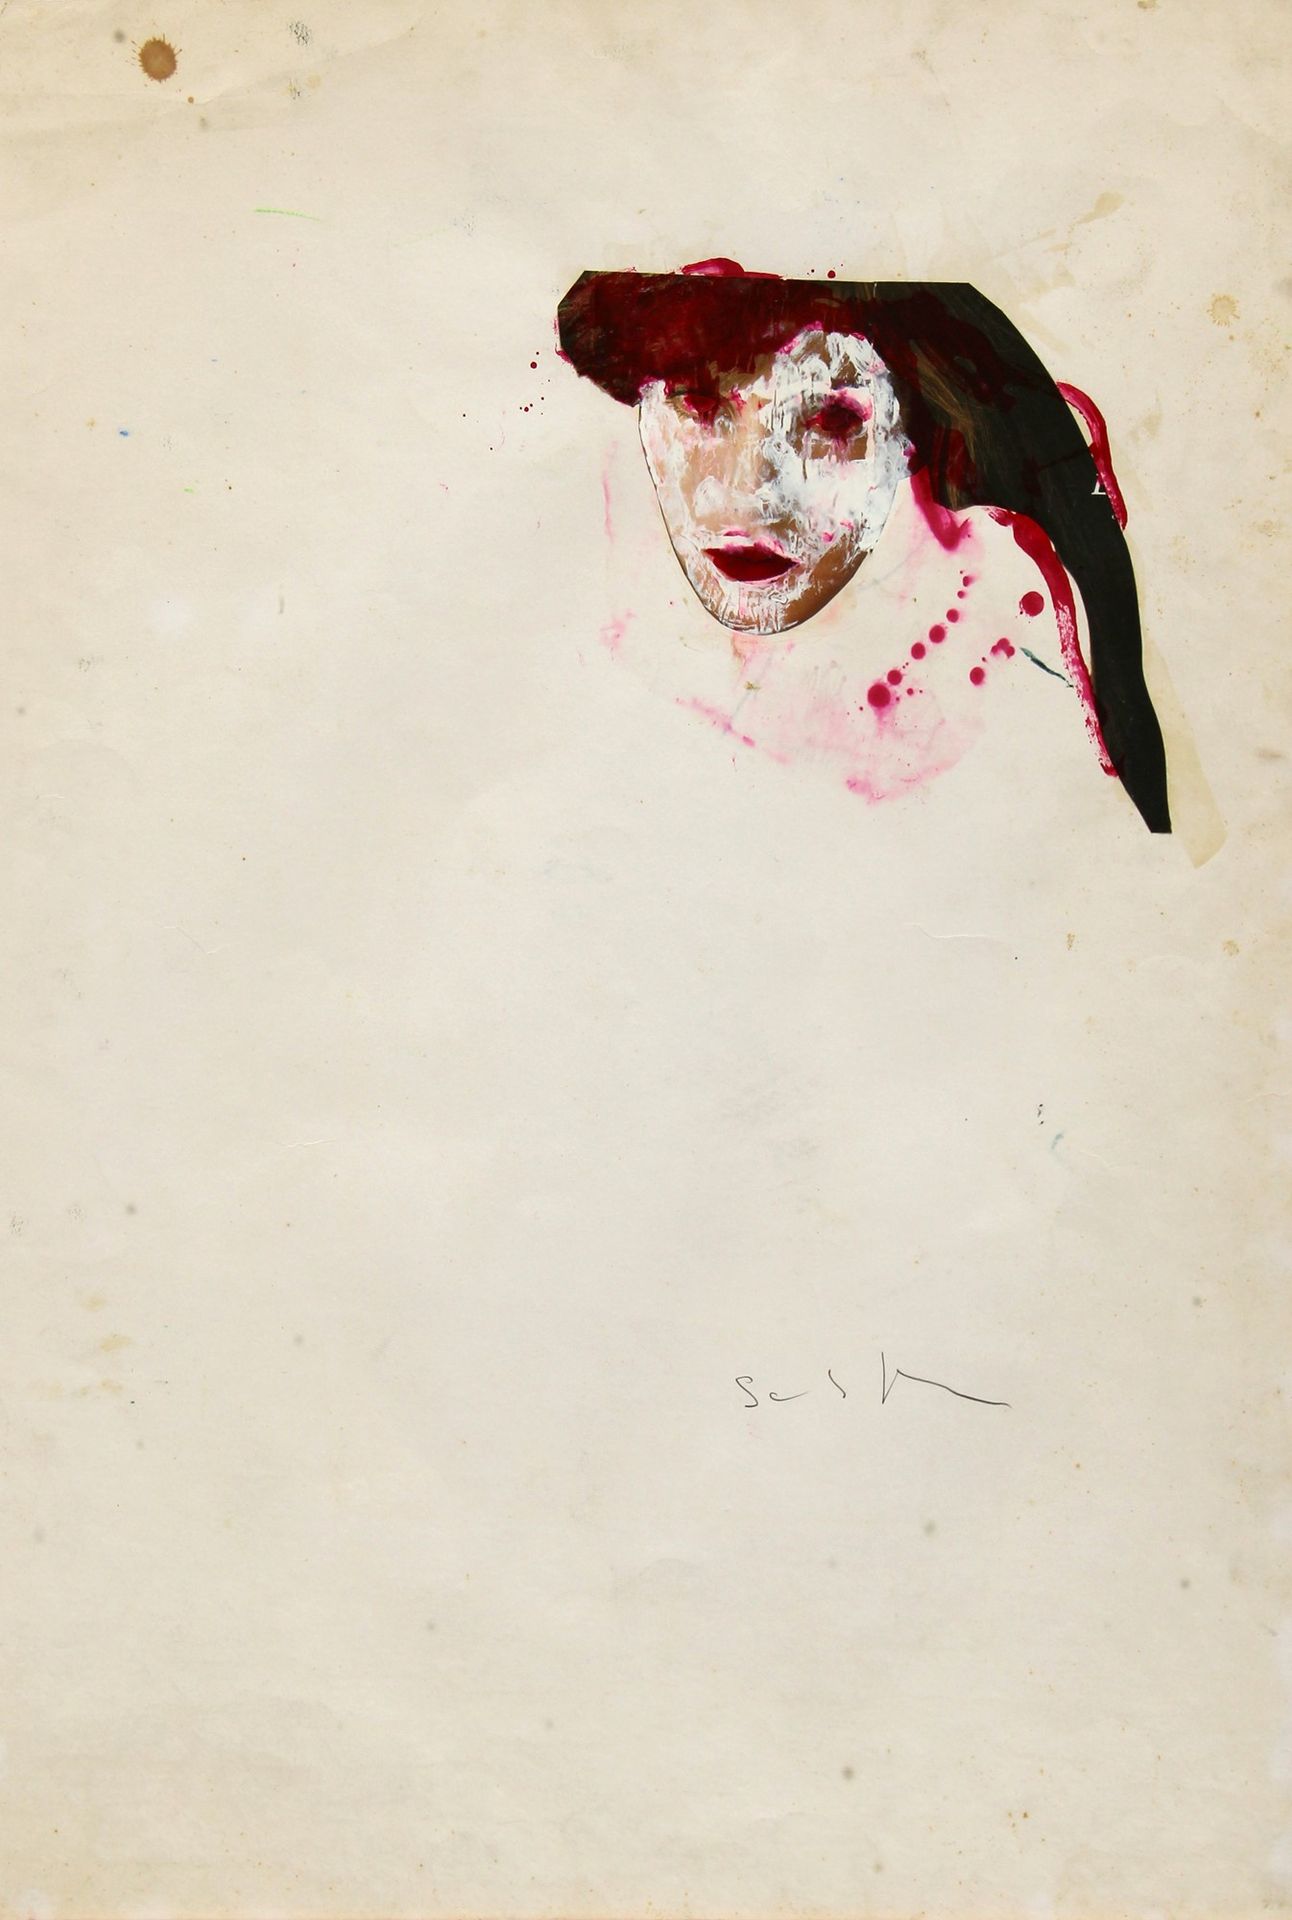 Mario SCHIFANO Untitled 1974-78, techniques mixtes sur papier, cm. 100x70

Certi&hellip;